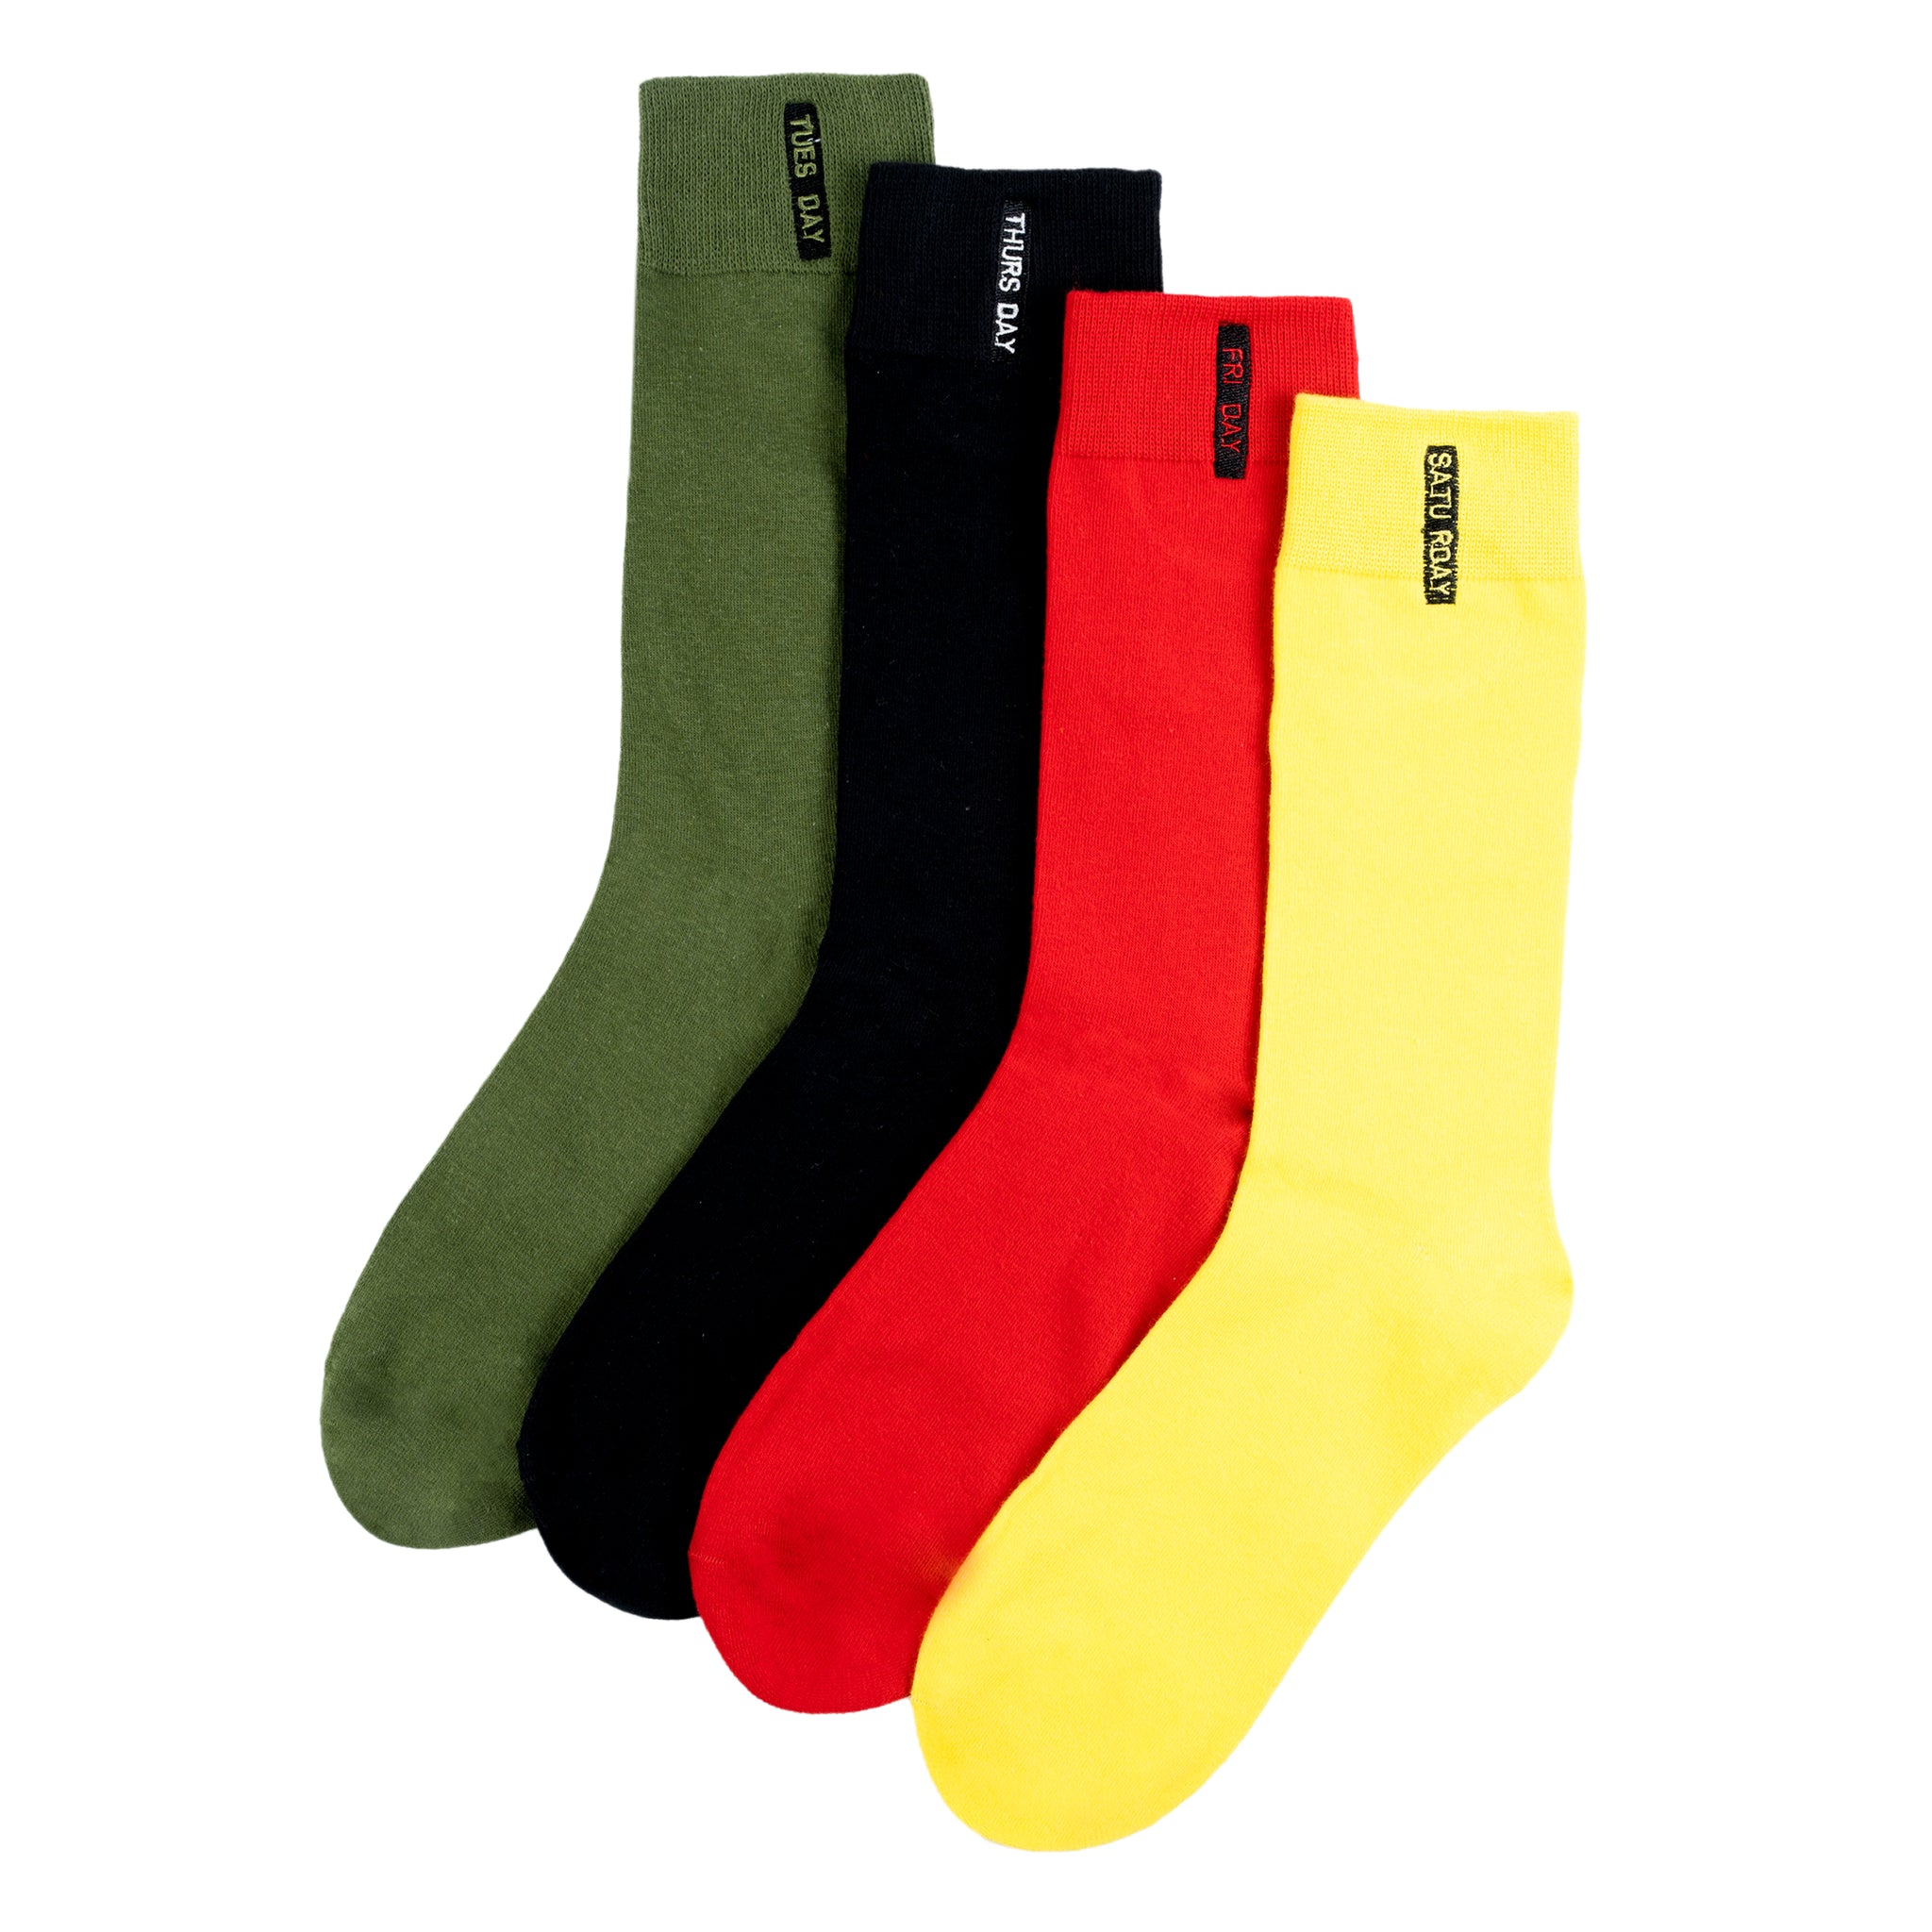 Chokore Stylish Cotton Socks (Red)